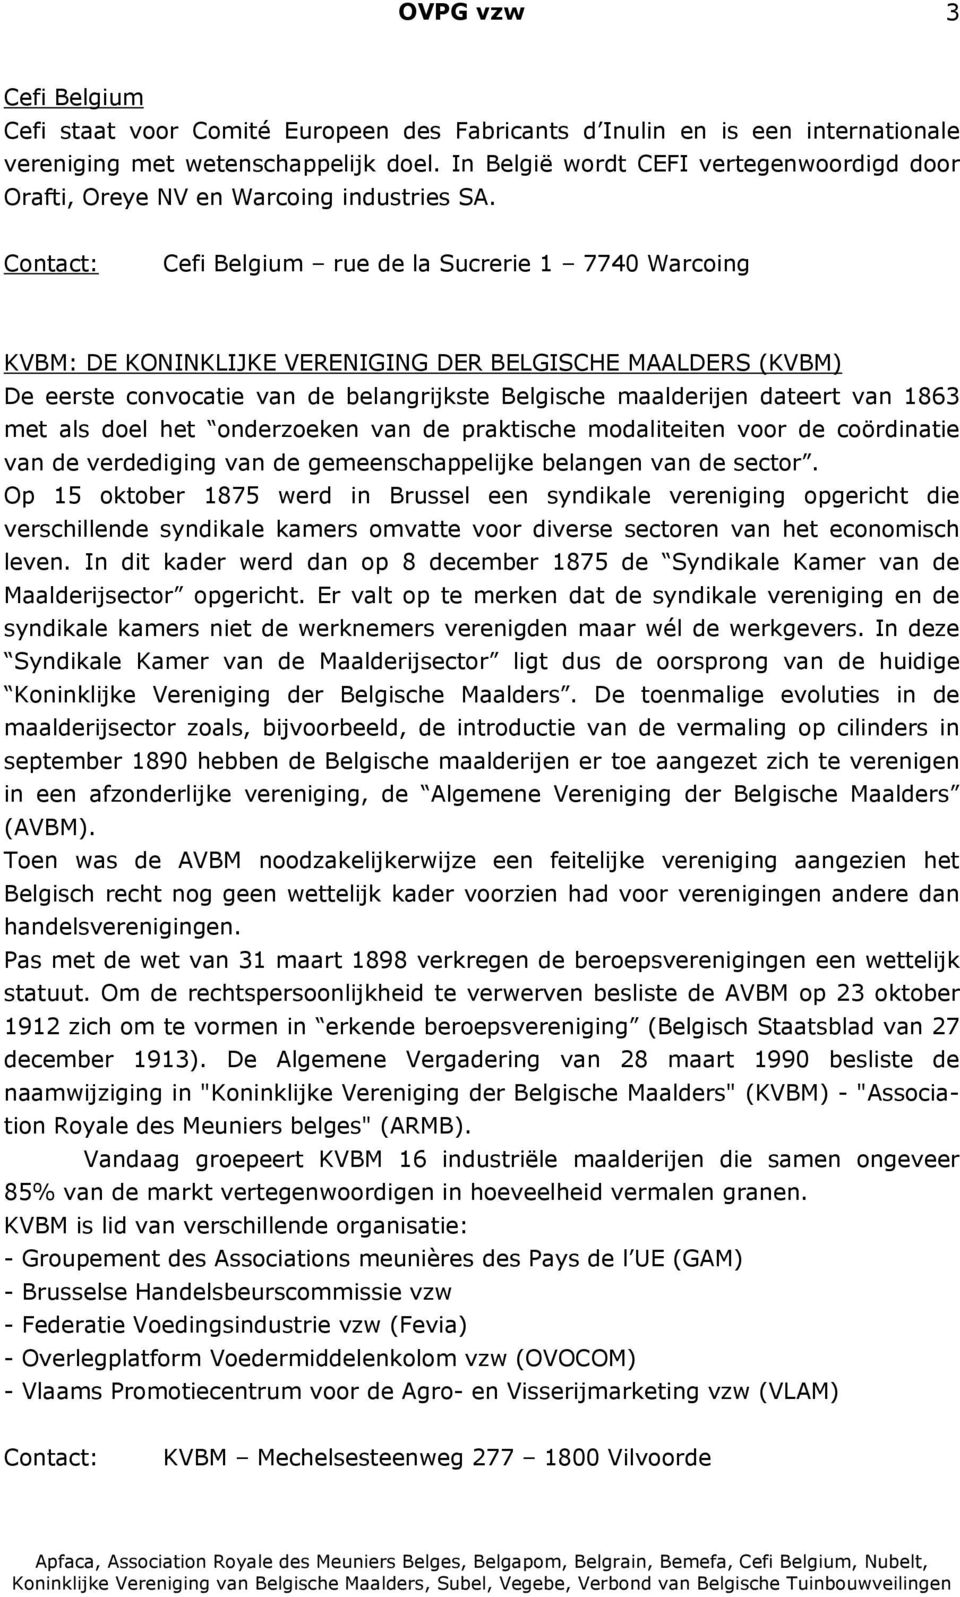 Cefi Belgium rue de la Sucrerie 1 7740 Warcoing KVBM: DE KONINKLIJKE VERENIGING DER BELGISCHE MAALDERS (KVBM) De eerste convocatie van de belangrijkste Belgische maalderijen dateert van 1863 met als